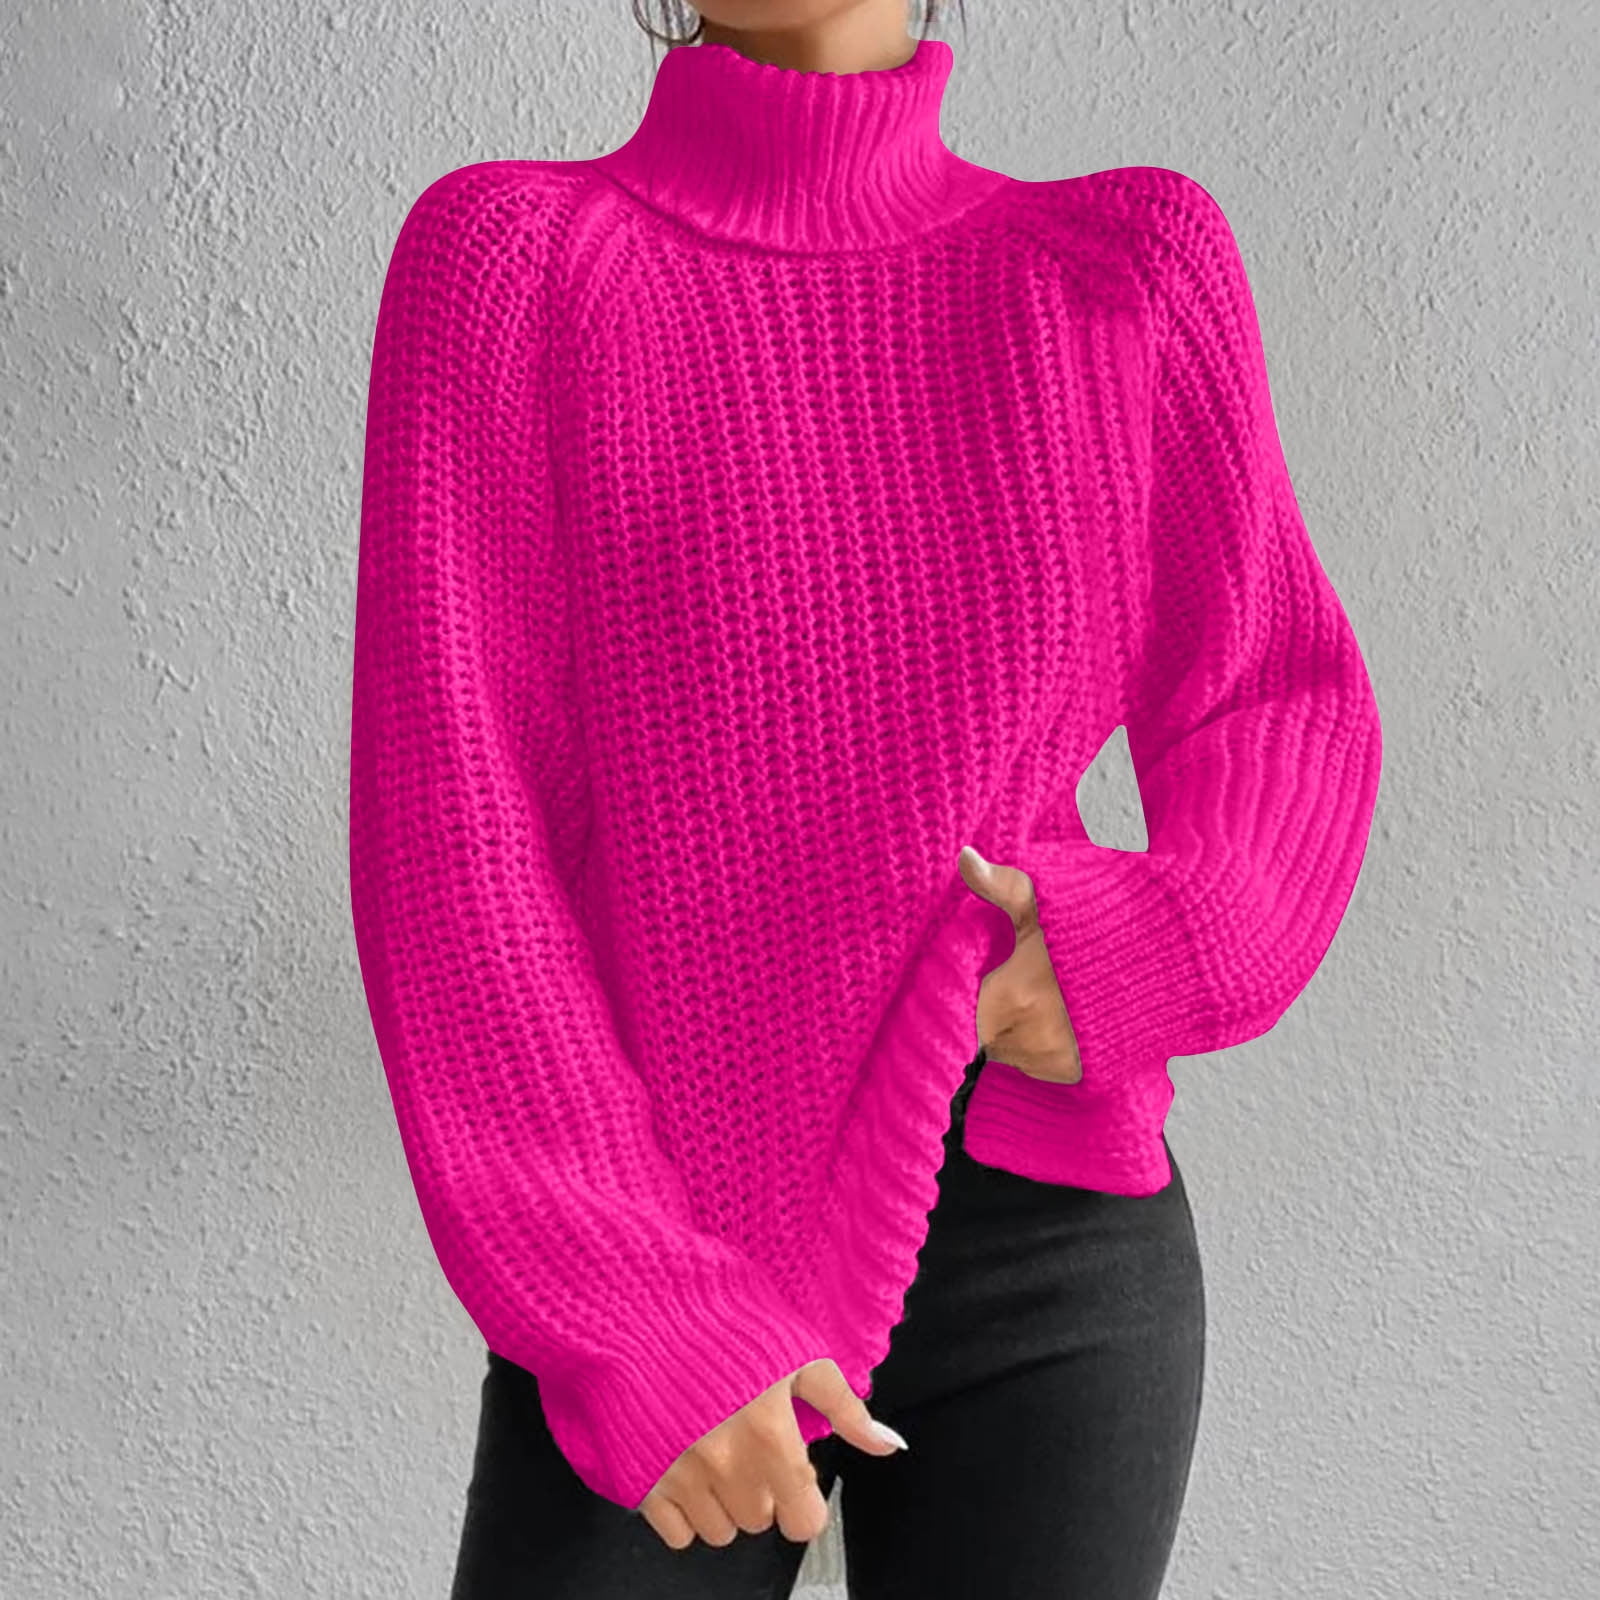 Bnwani Plus Size Turtleneck Sweaters for Women Top Knit Long Sleeve ...